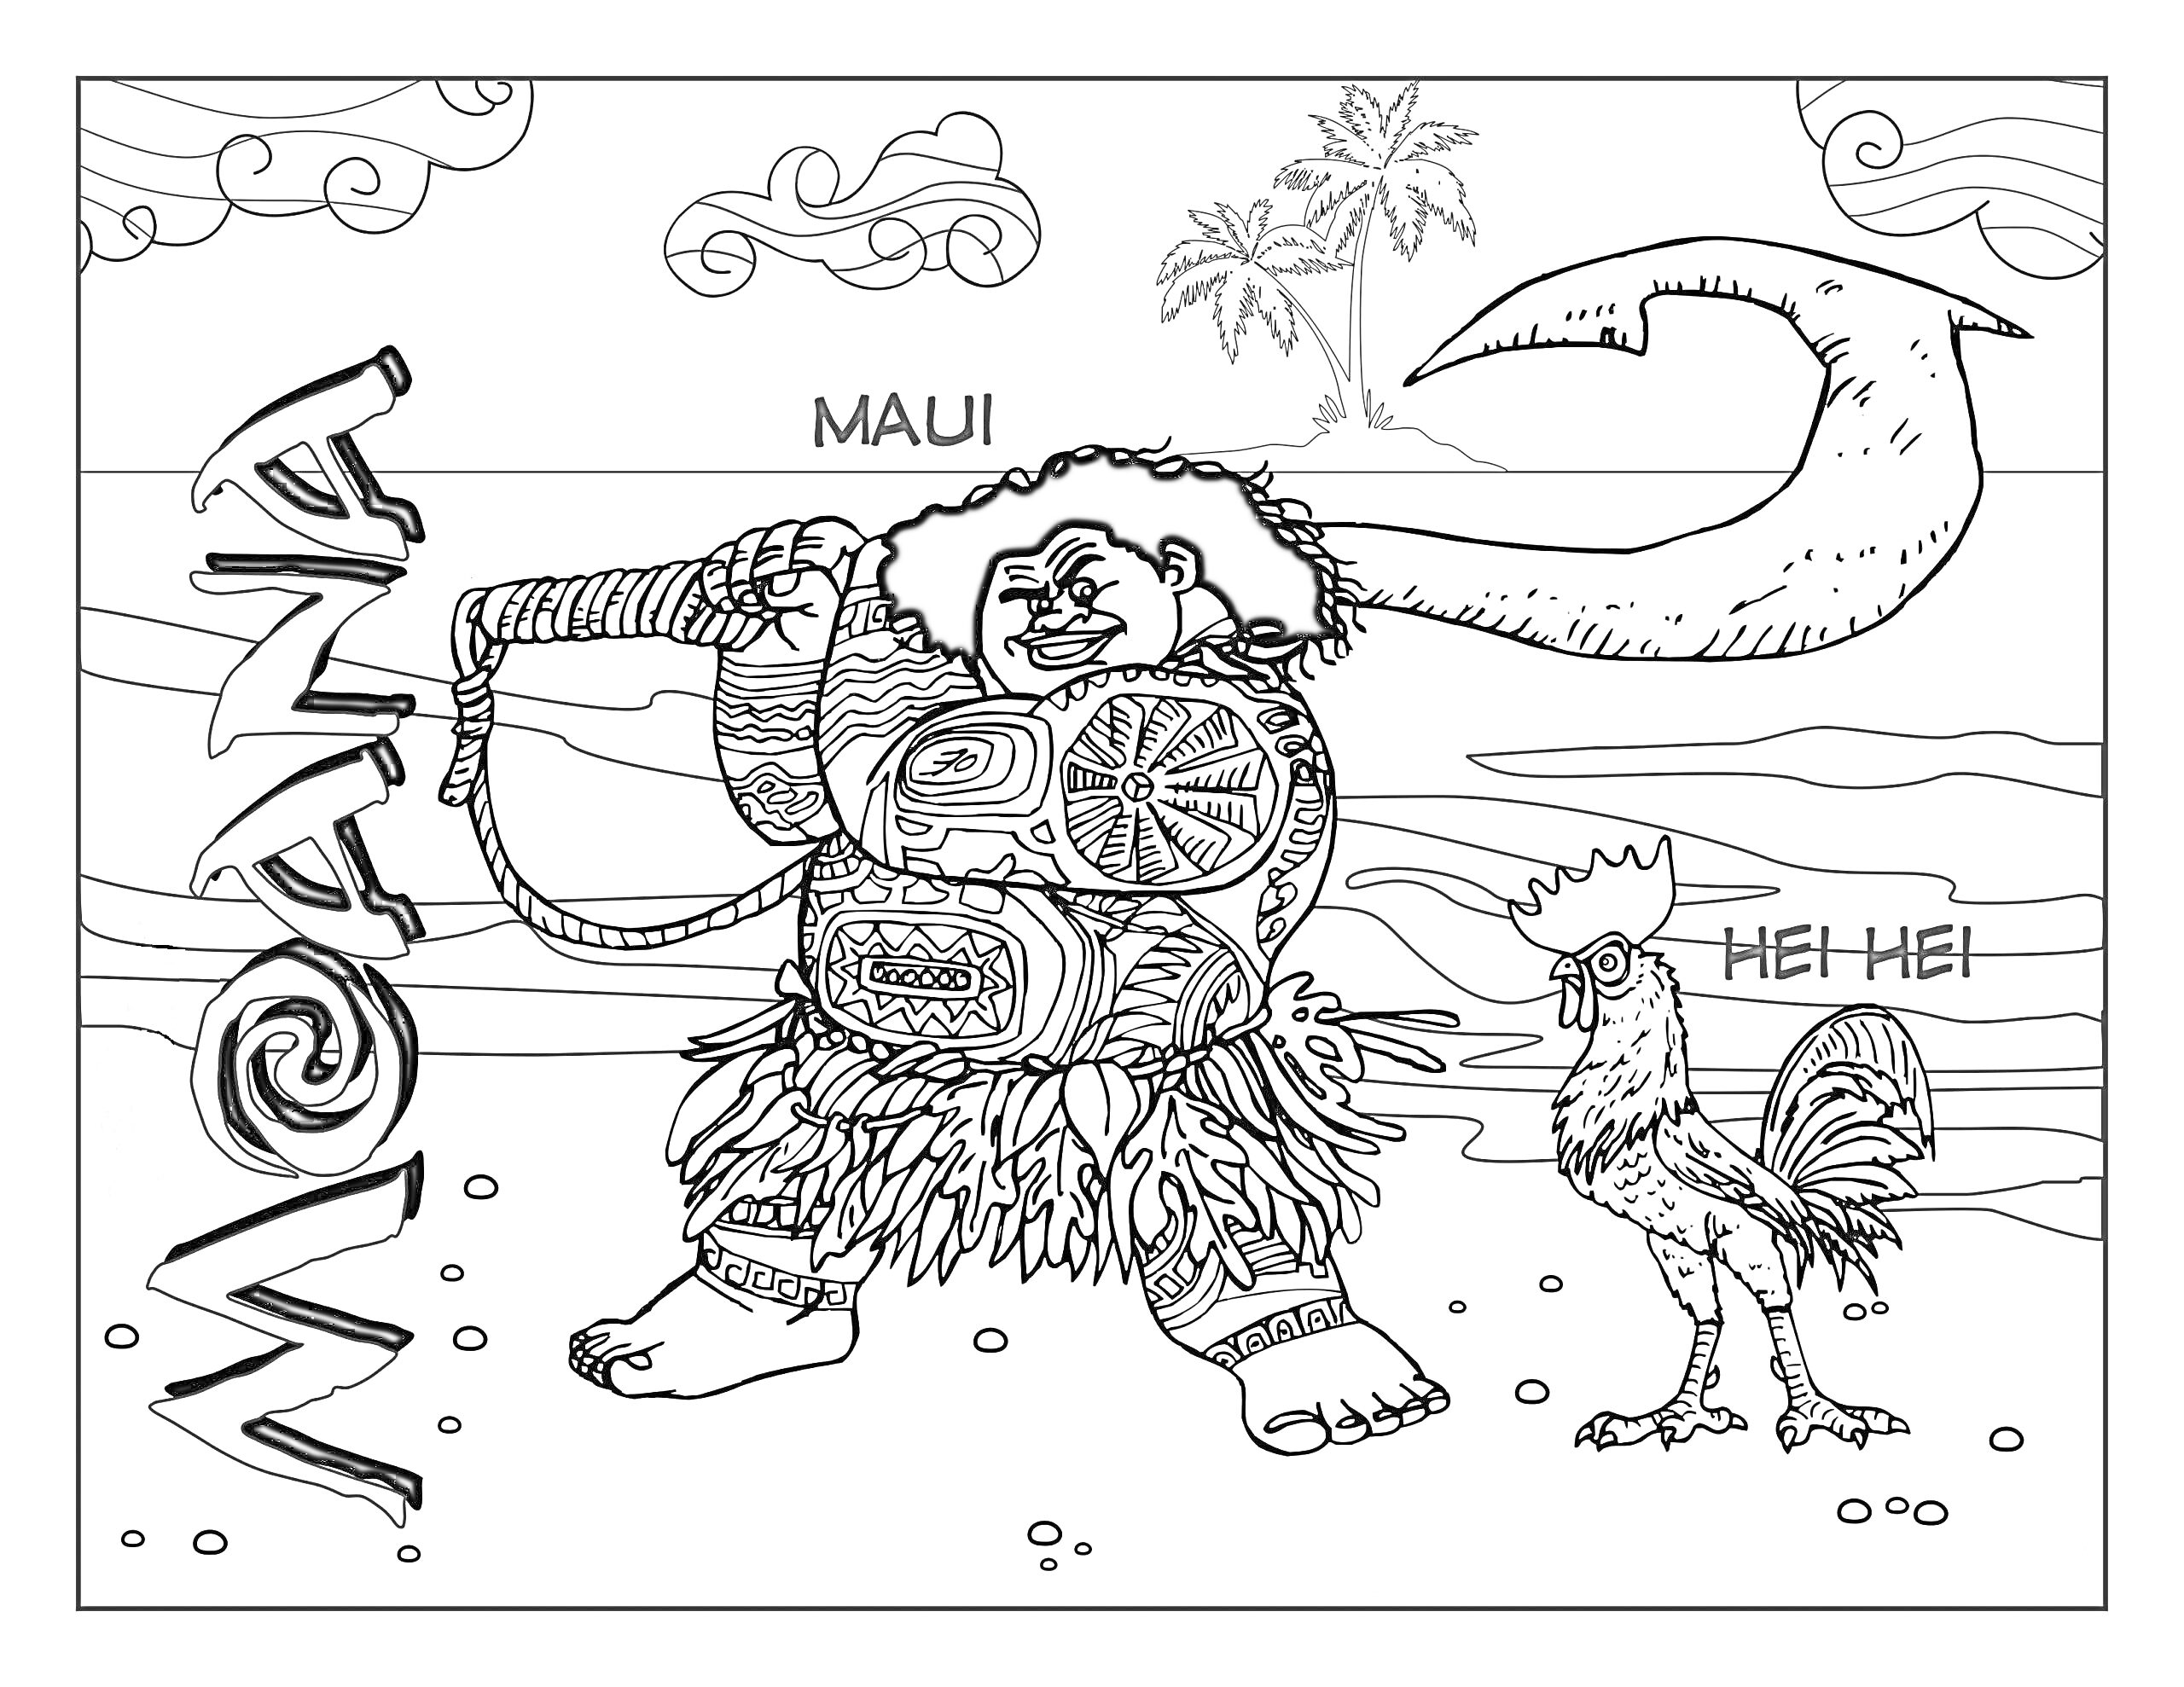 Раскраска Мауи с волшебным крюком и петух Хей-Хей на пляже